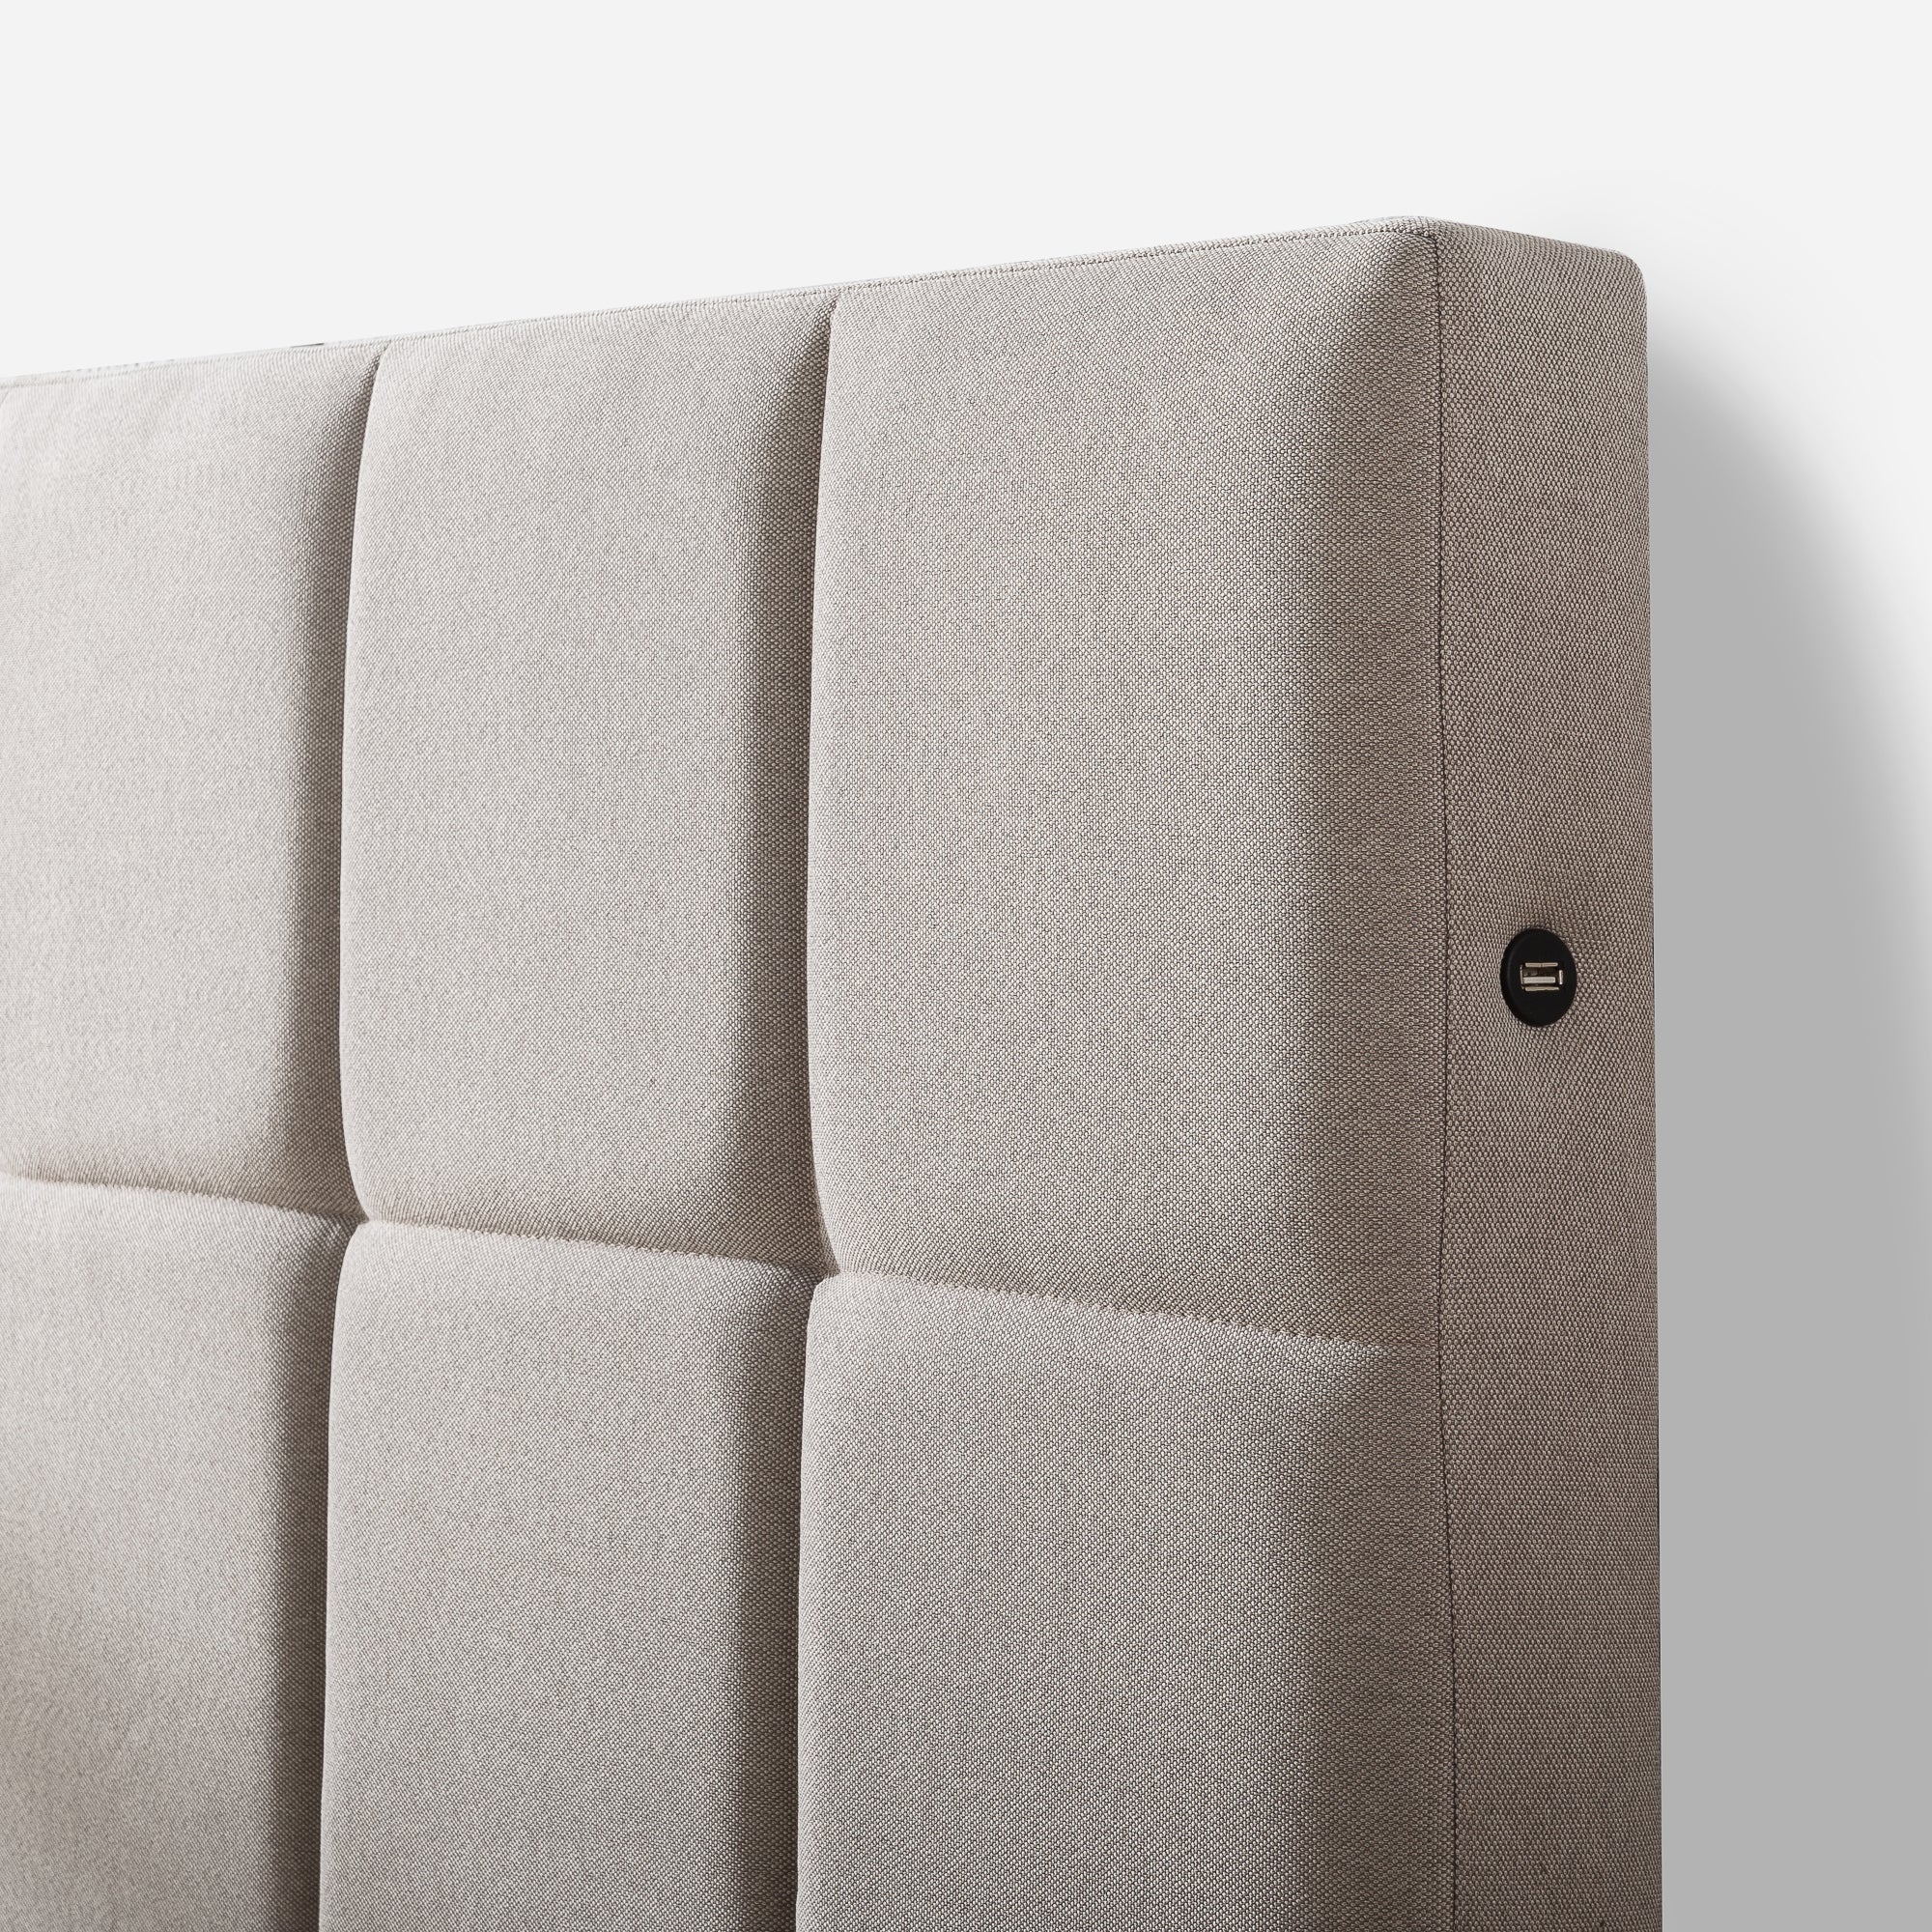 Lottie Upholstered Platform Bed Frame with Short Headboard